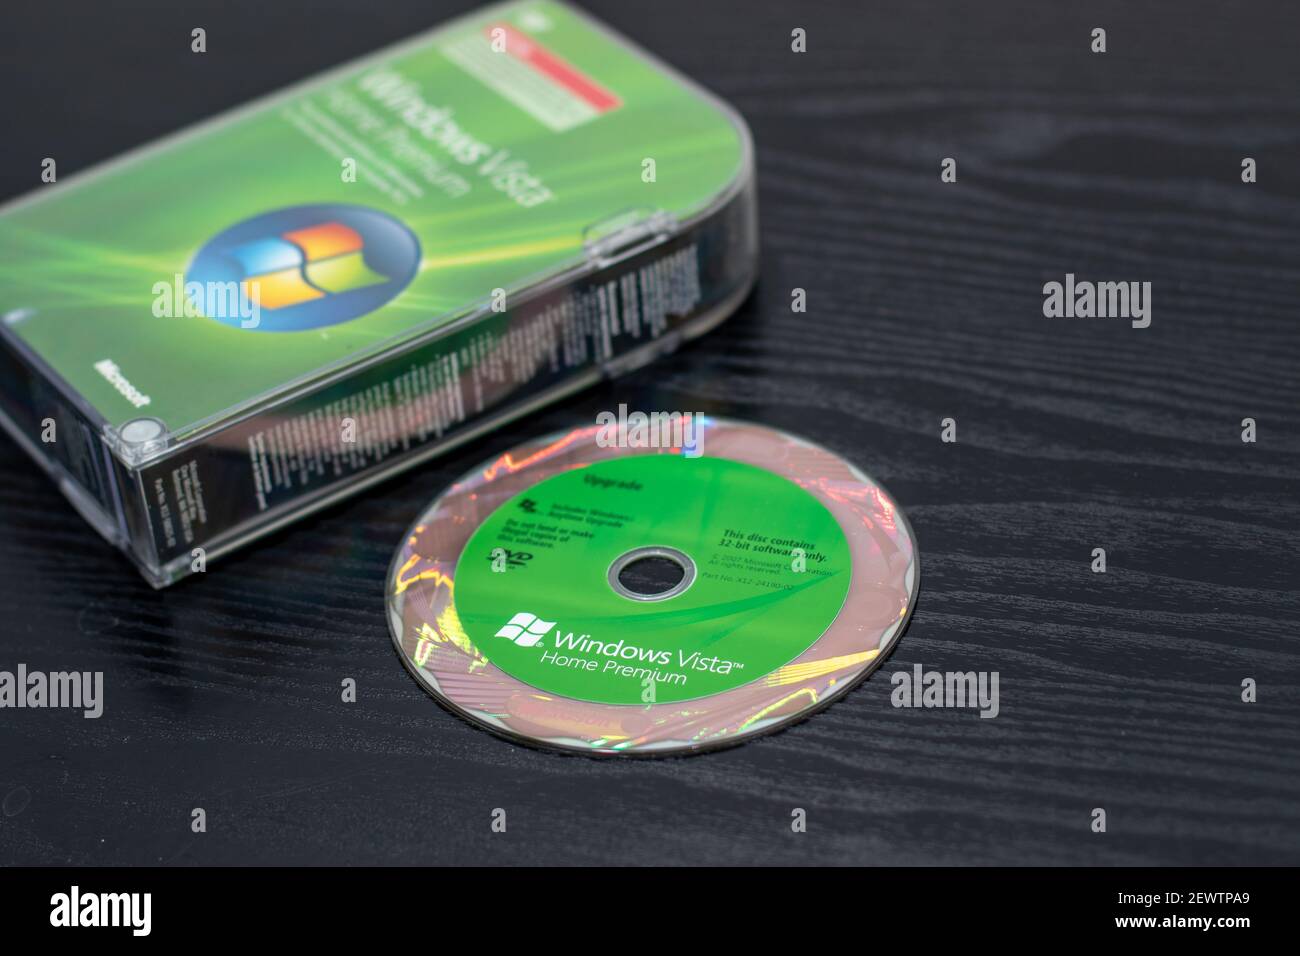 La caja y el disco poco fiables del sistema operativo Windows Vista  Fotografía de stock - Alamy